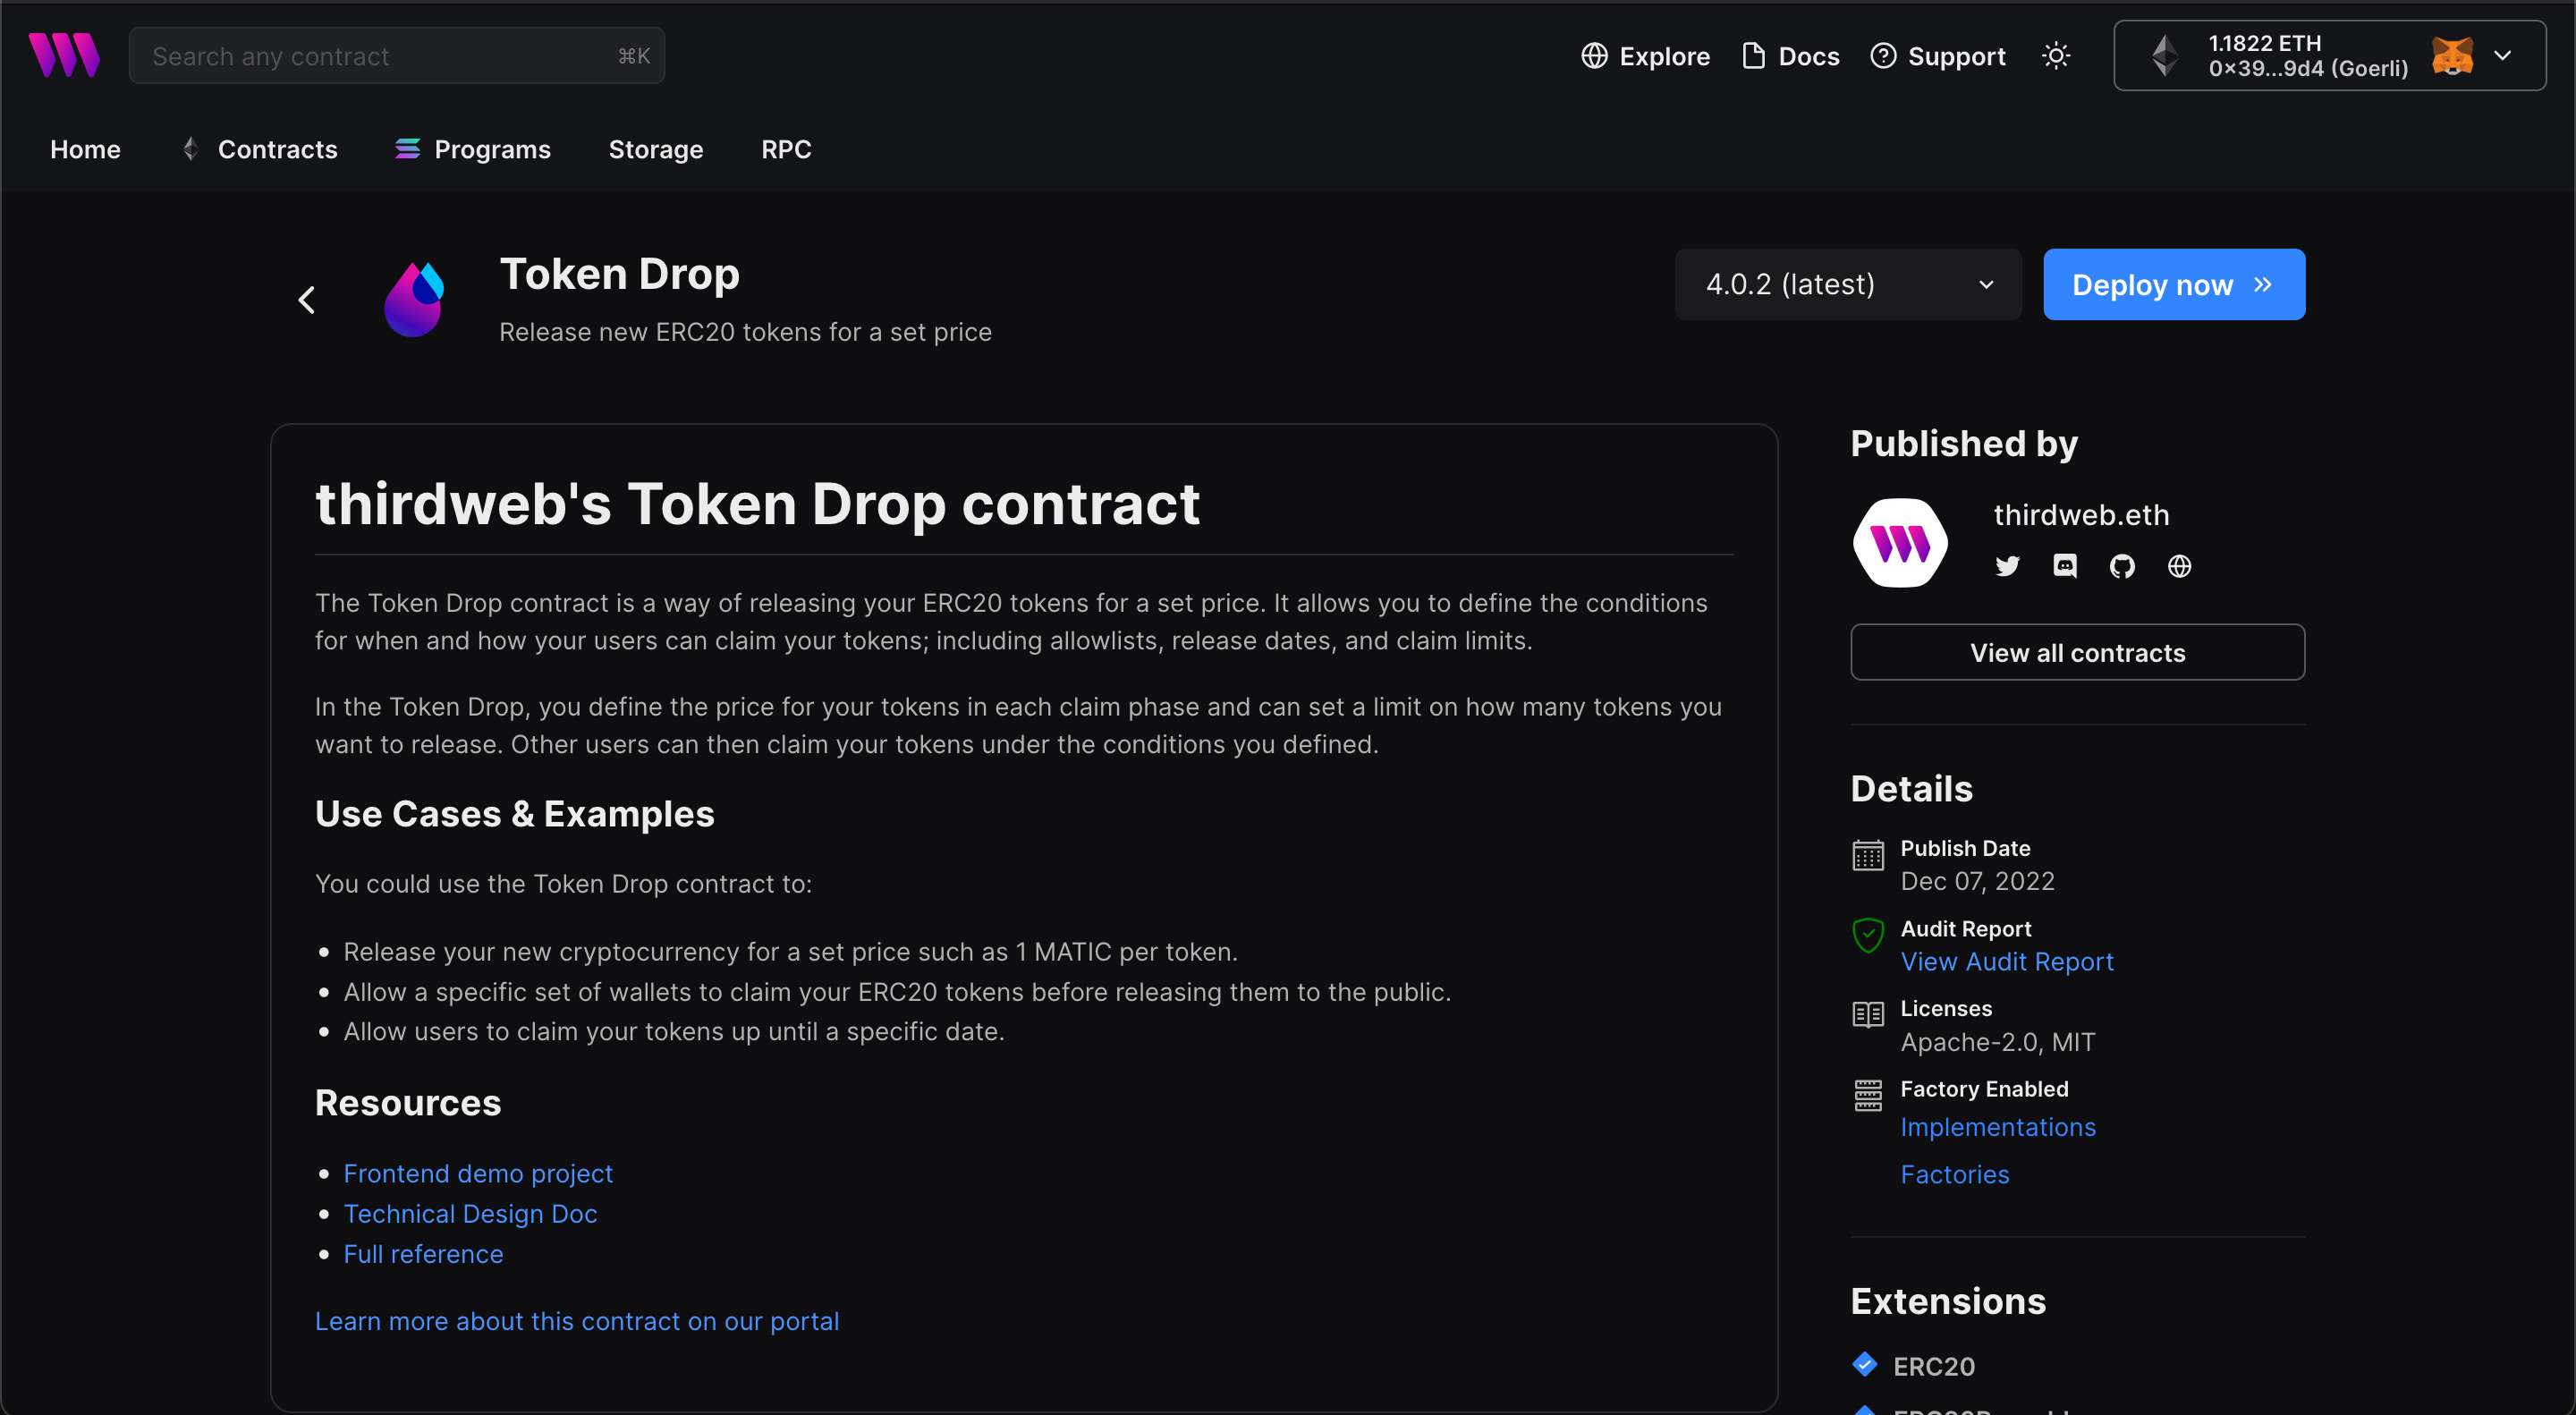 thirdweb's Token Drop contract